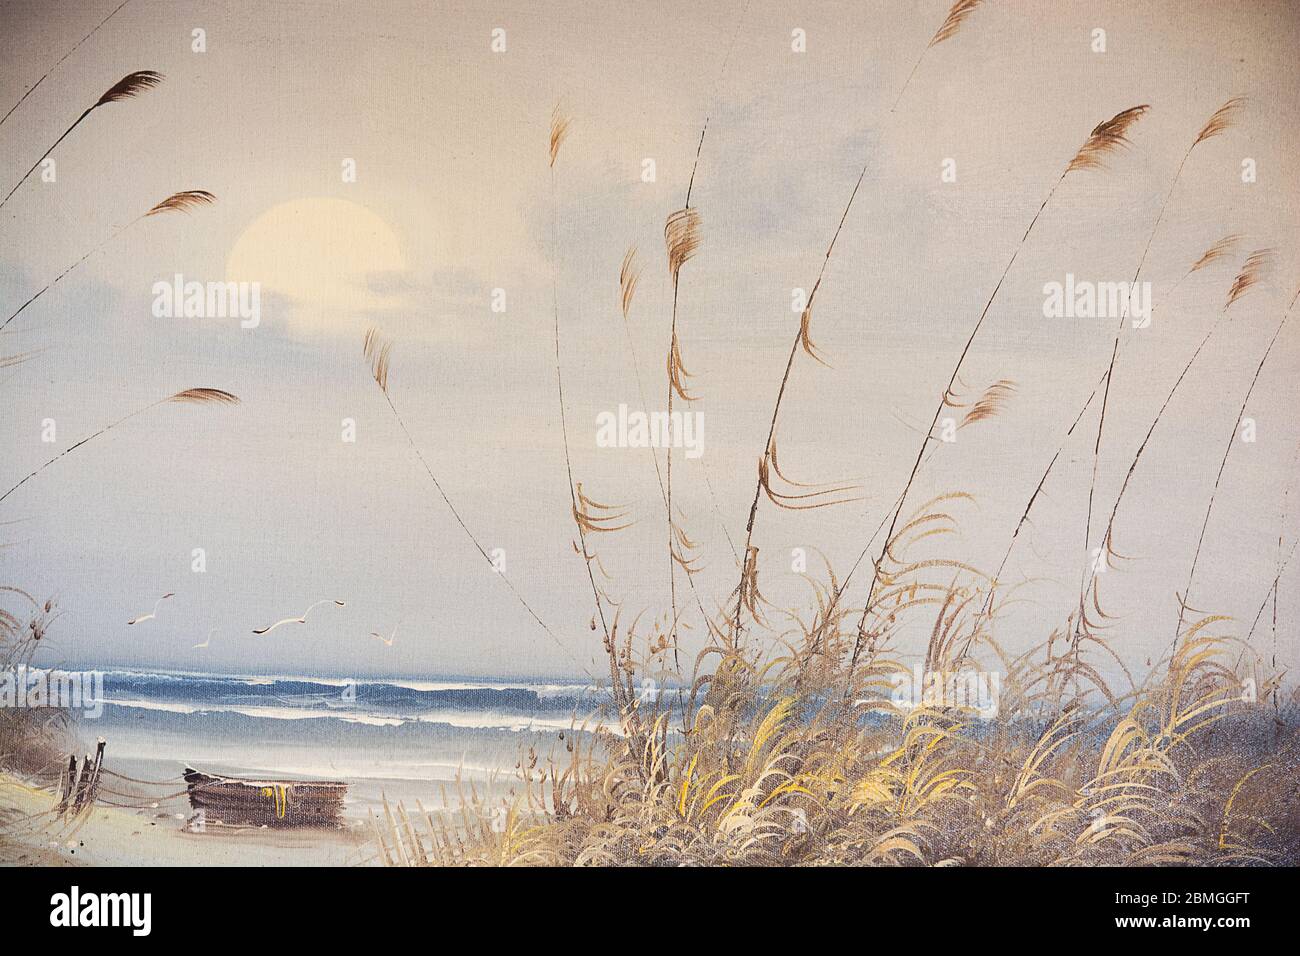 Magnifique belle photo colorée d'un bateau sur une plage avec des vagues de mer et le coucher de soleil dans un ciel nuageux utilisé comme illustration papier peint cartes abstraites de fond Banque D'Images